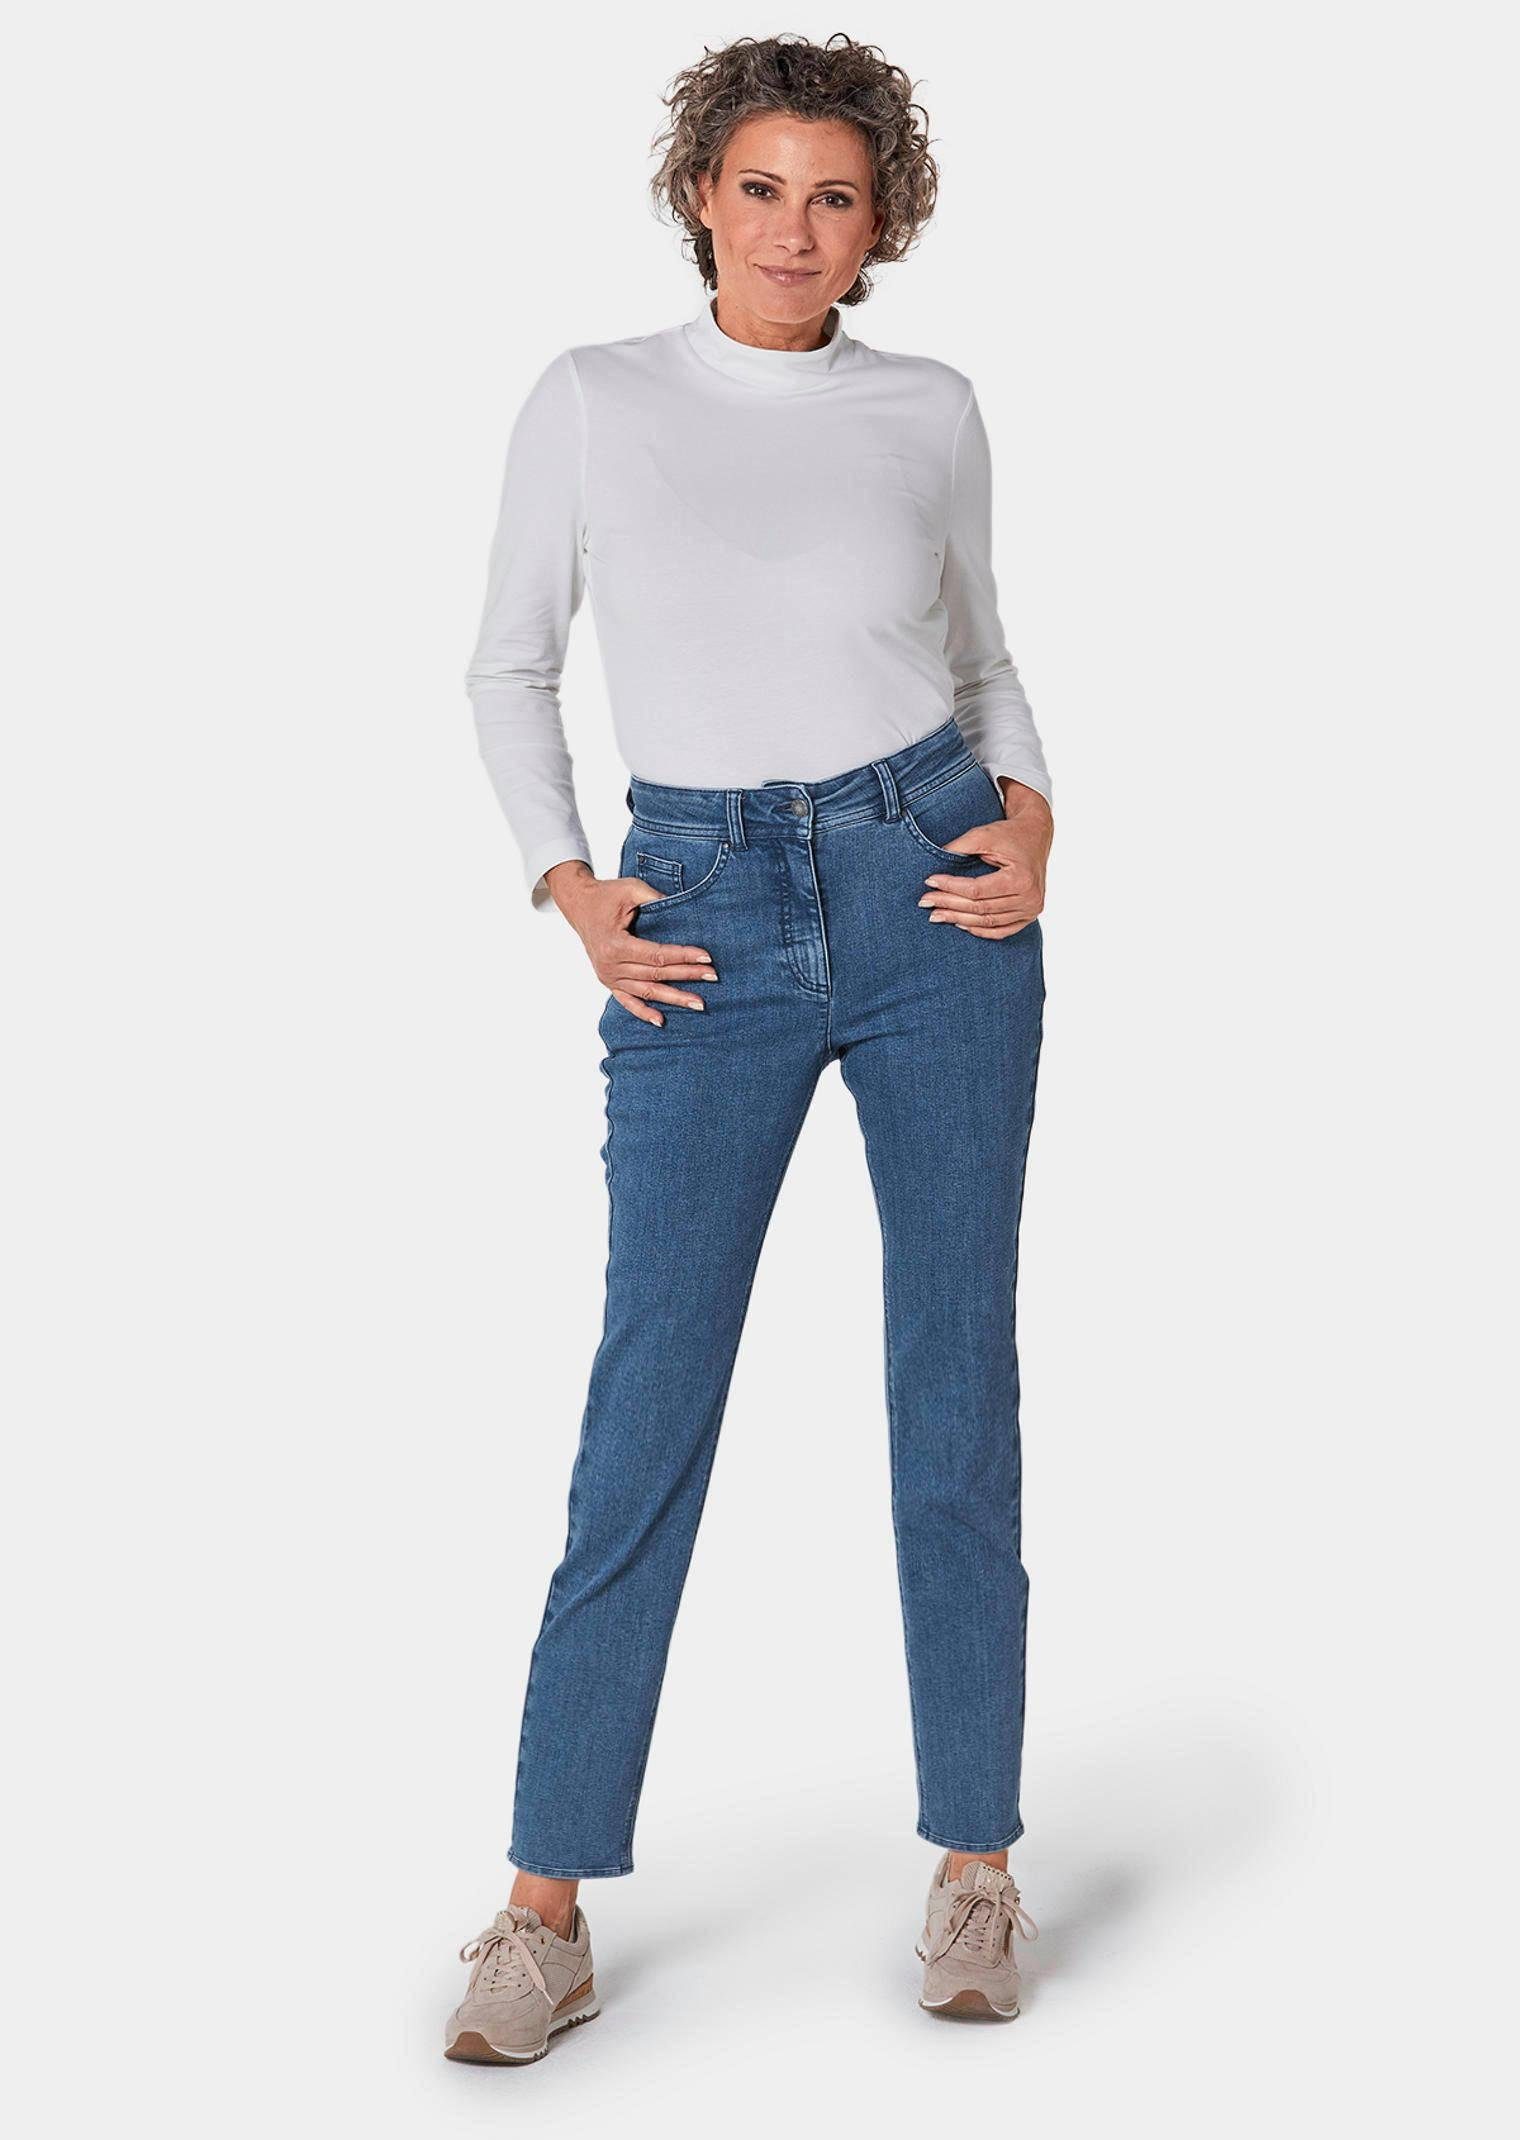 GOLDNER Bequeme Jeans Hose marine Kurzgröße: Bauchweg-Effekt Superbequeme mit